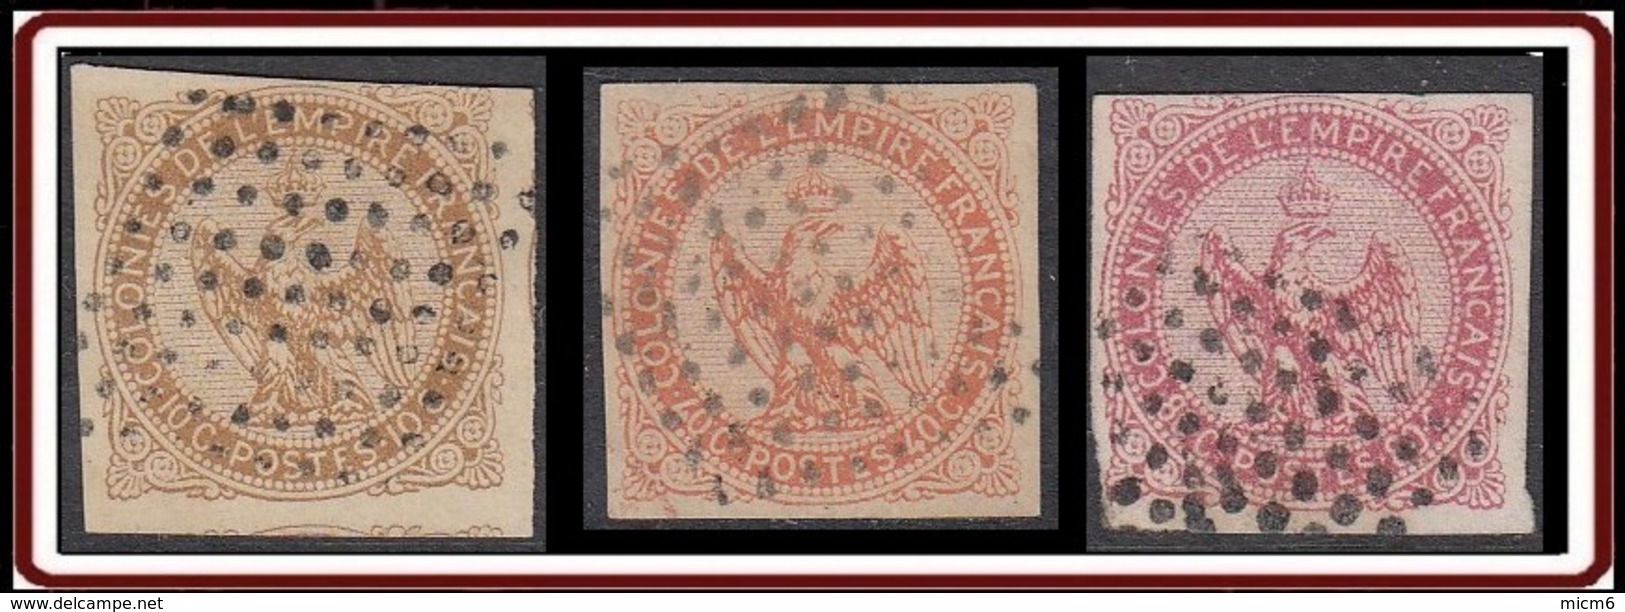 Colonies Générales - Aigle Impérial N° 3, 5 & 6 (YT) N° 3, 5 & 6 (AM) Oblitérés Losange 9x9 De Pondichery. - Aigle Impérial